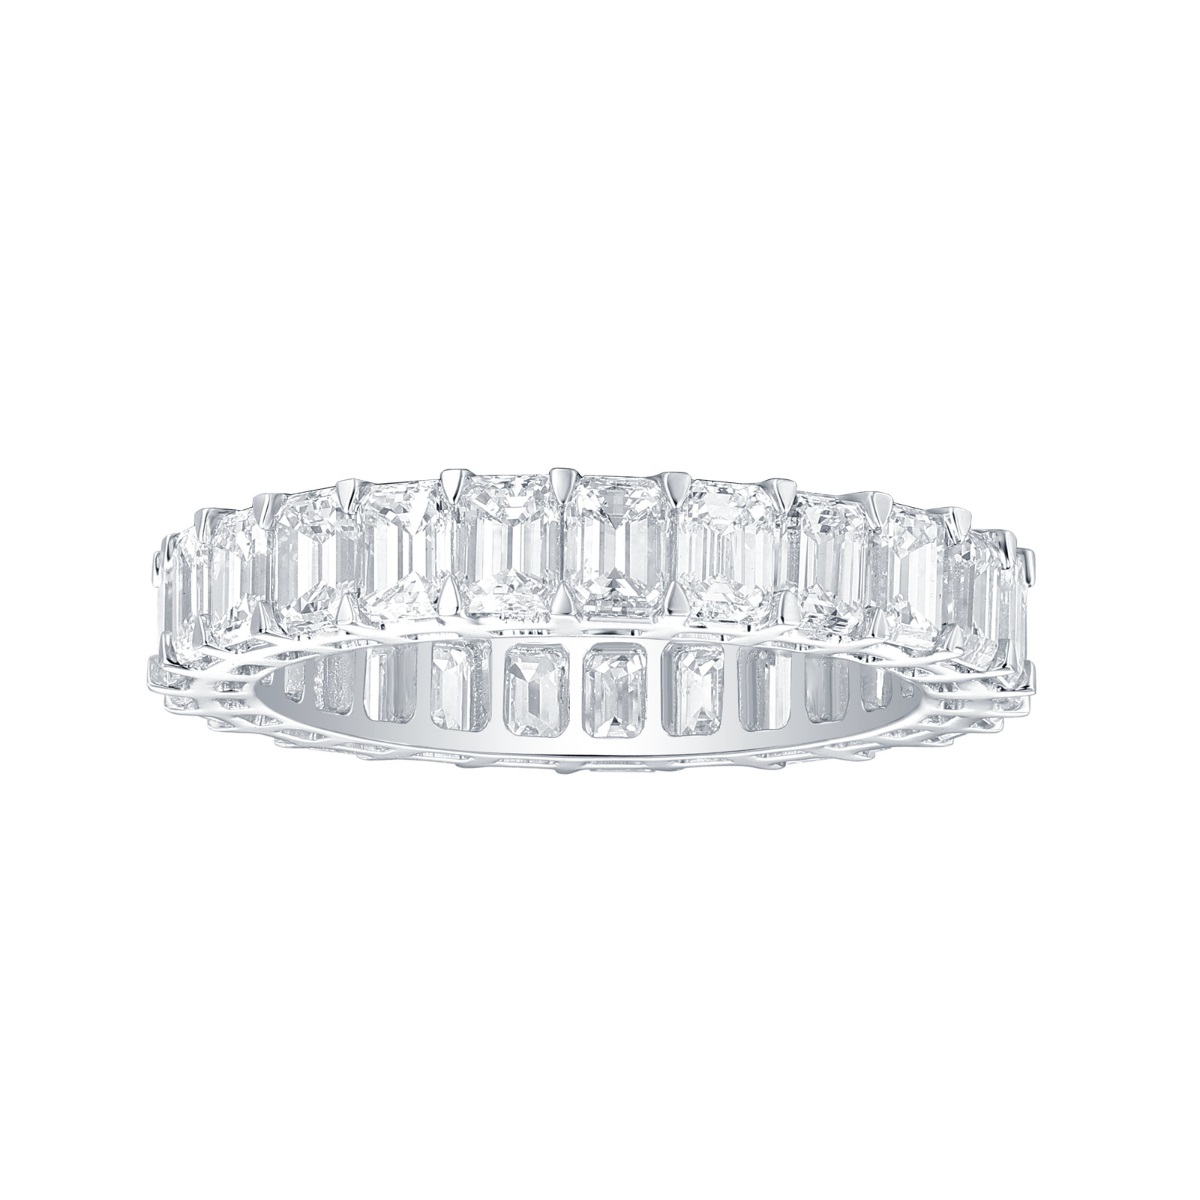 R36912WHT – 18K White Gold Diamond Ring, 4.35 TCW